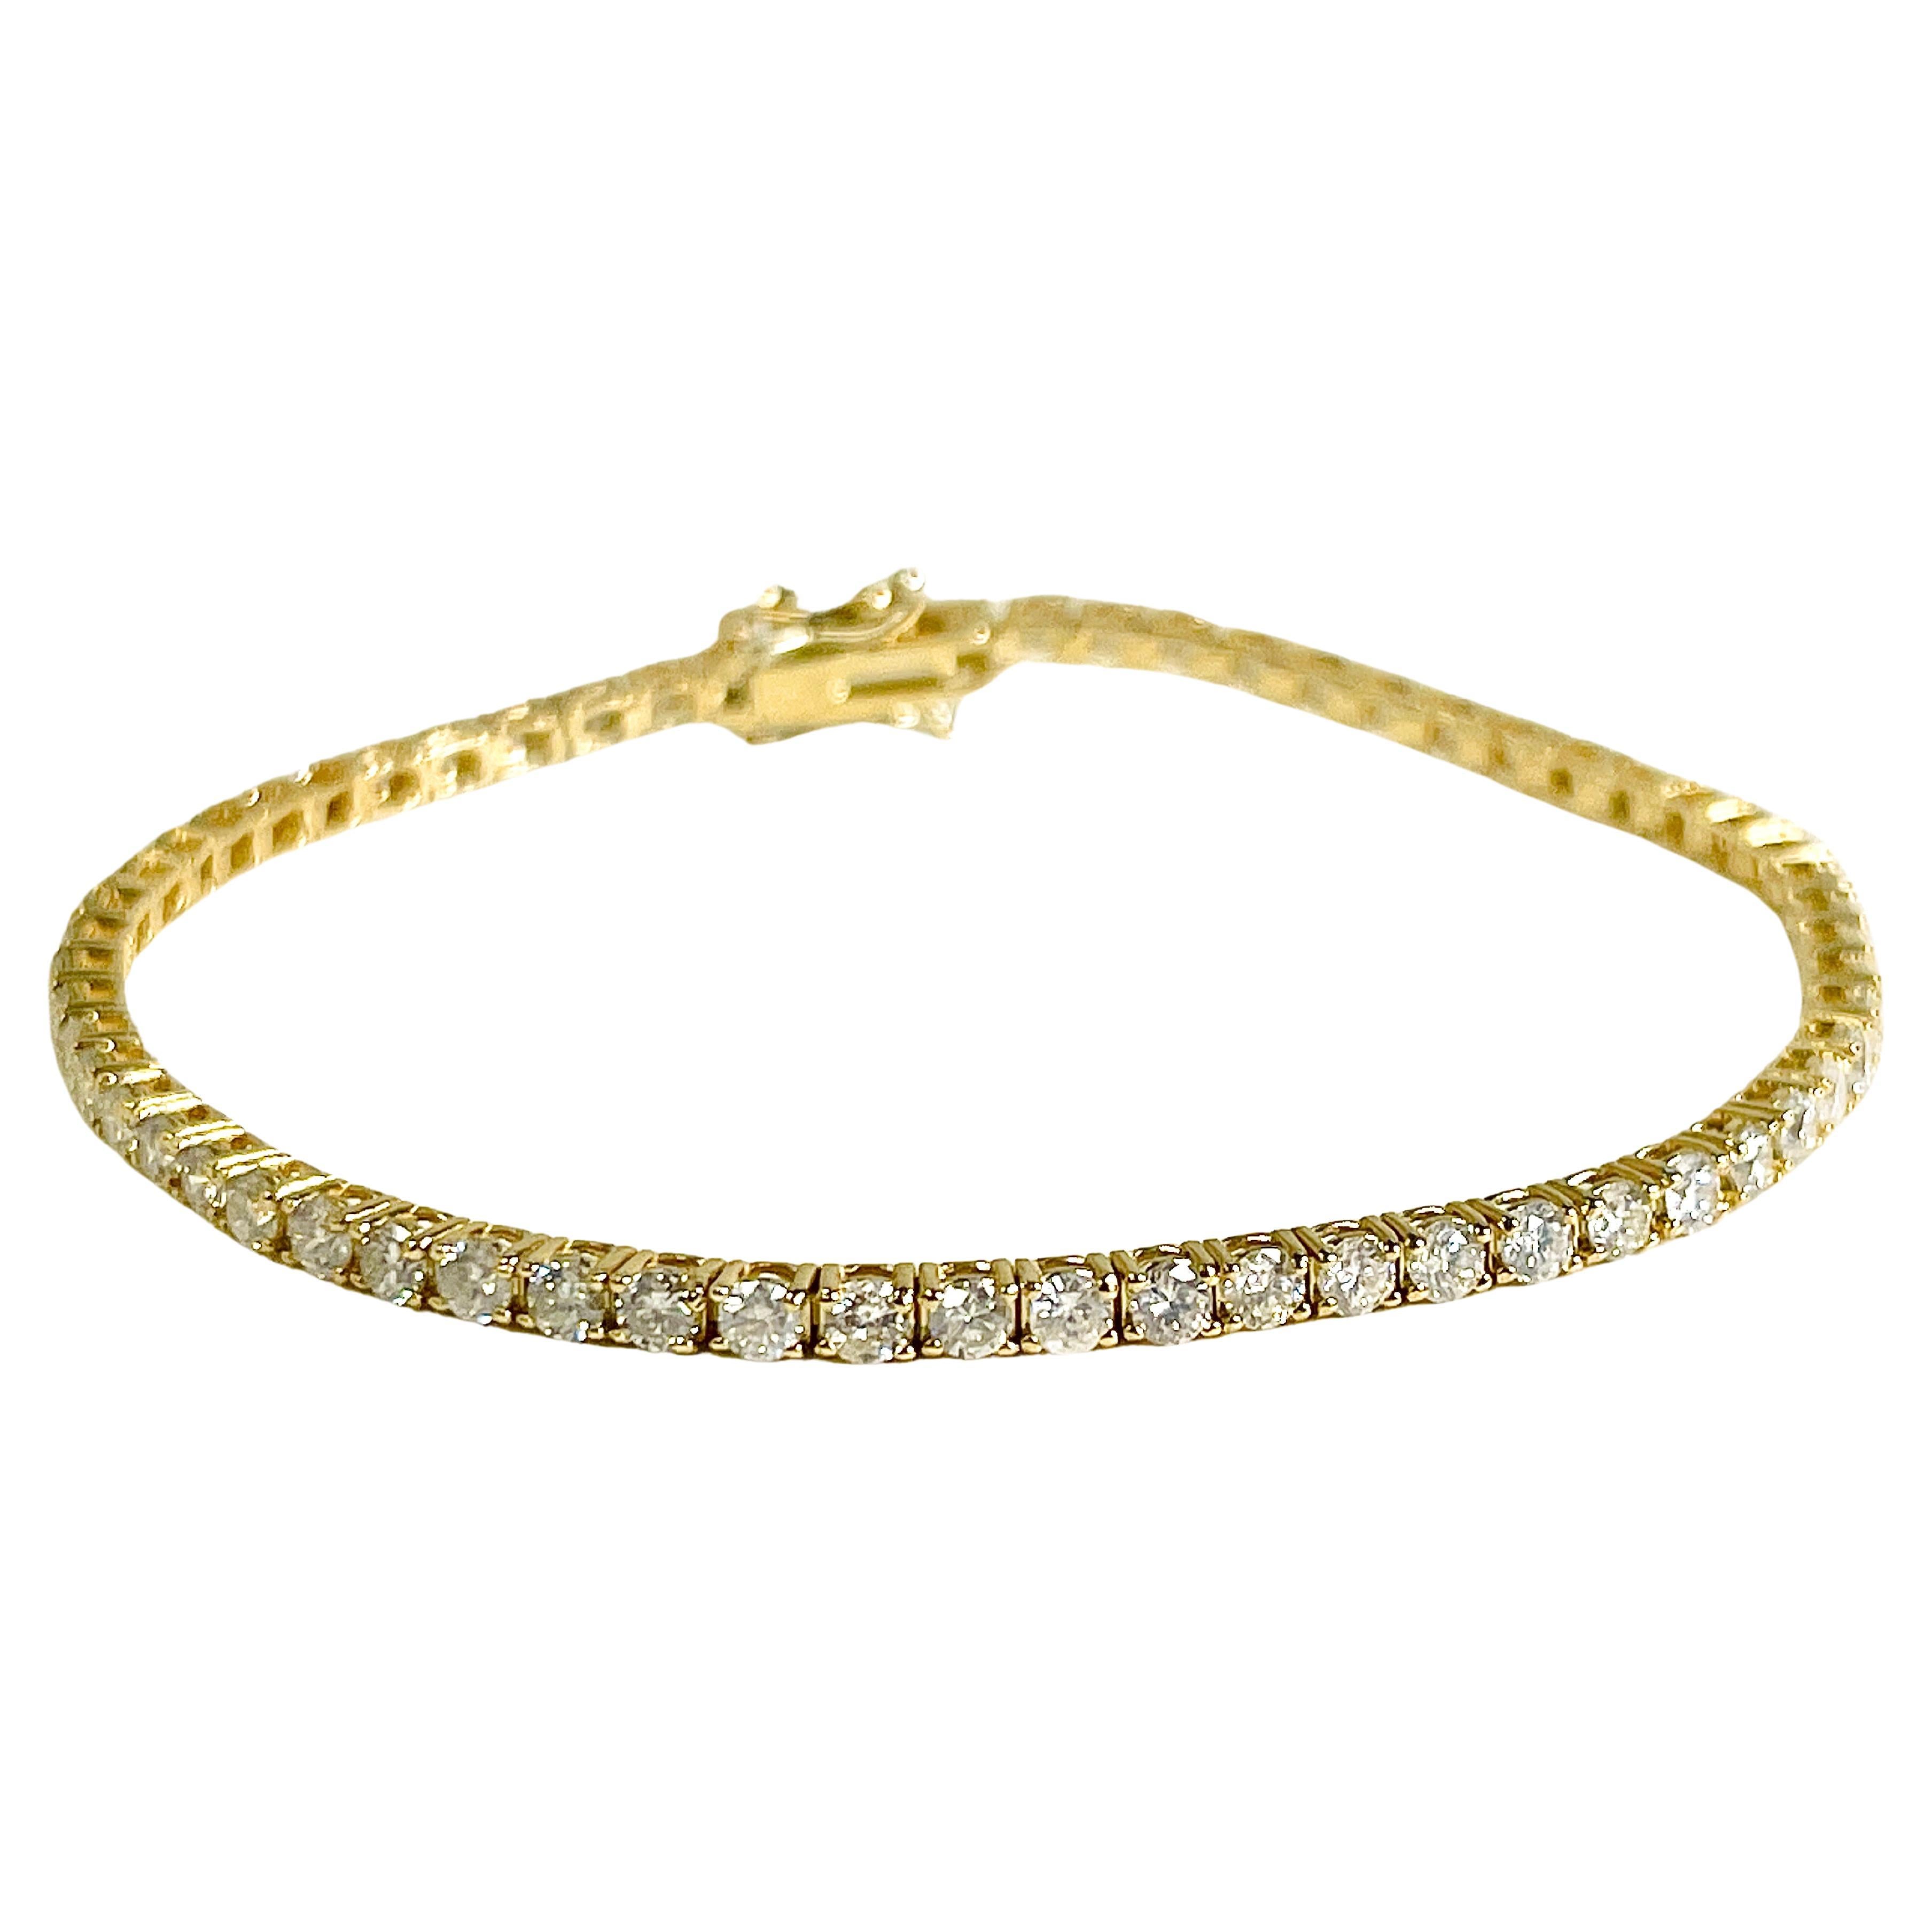 3.00 Carats Natural Diamonds 14K Yellow Gold Tennis Bracelet